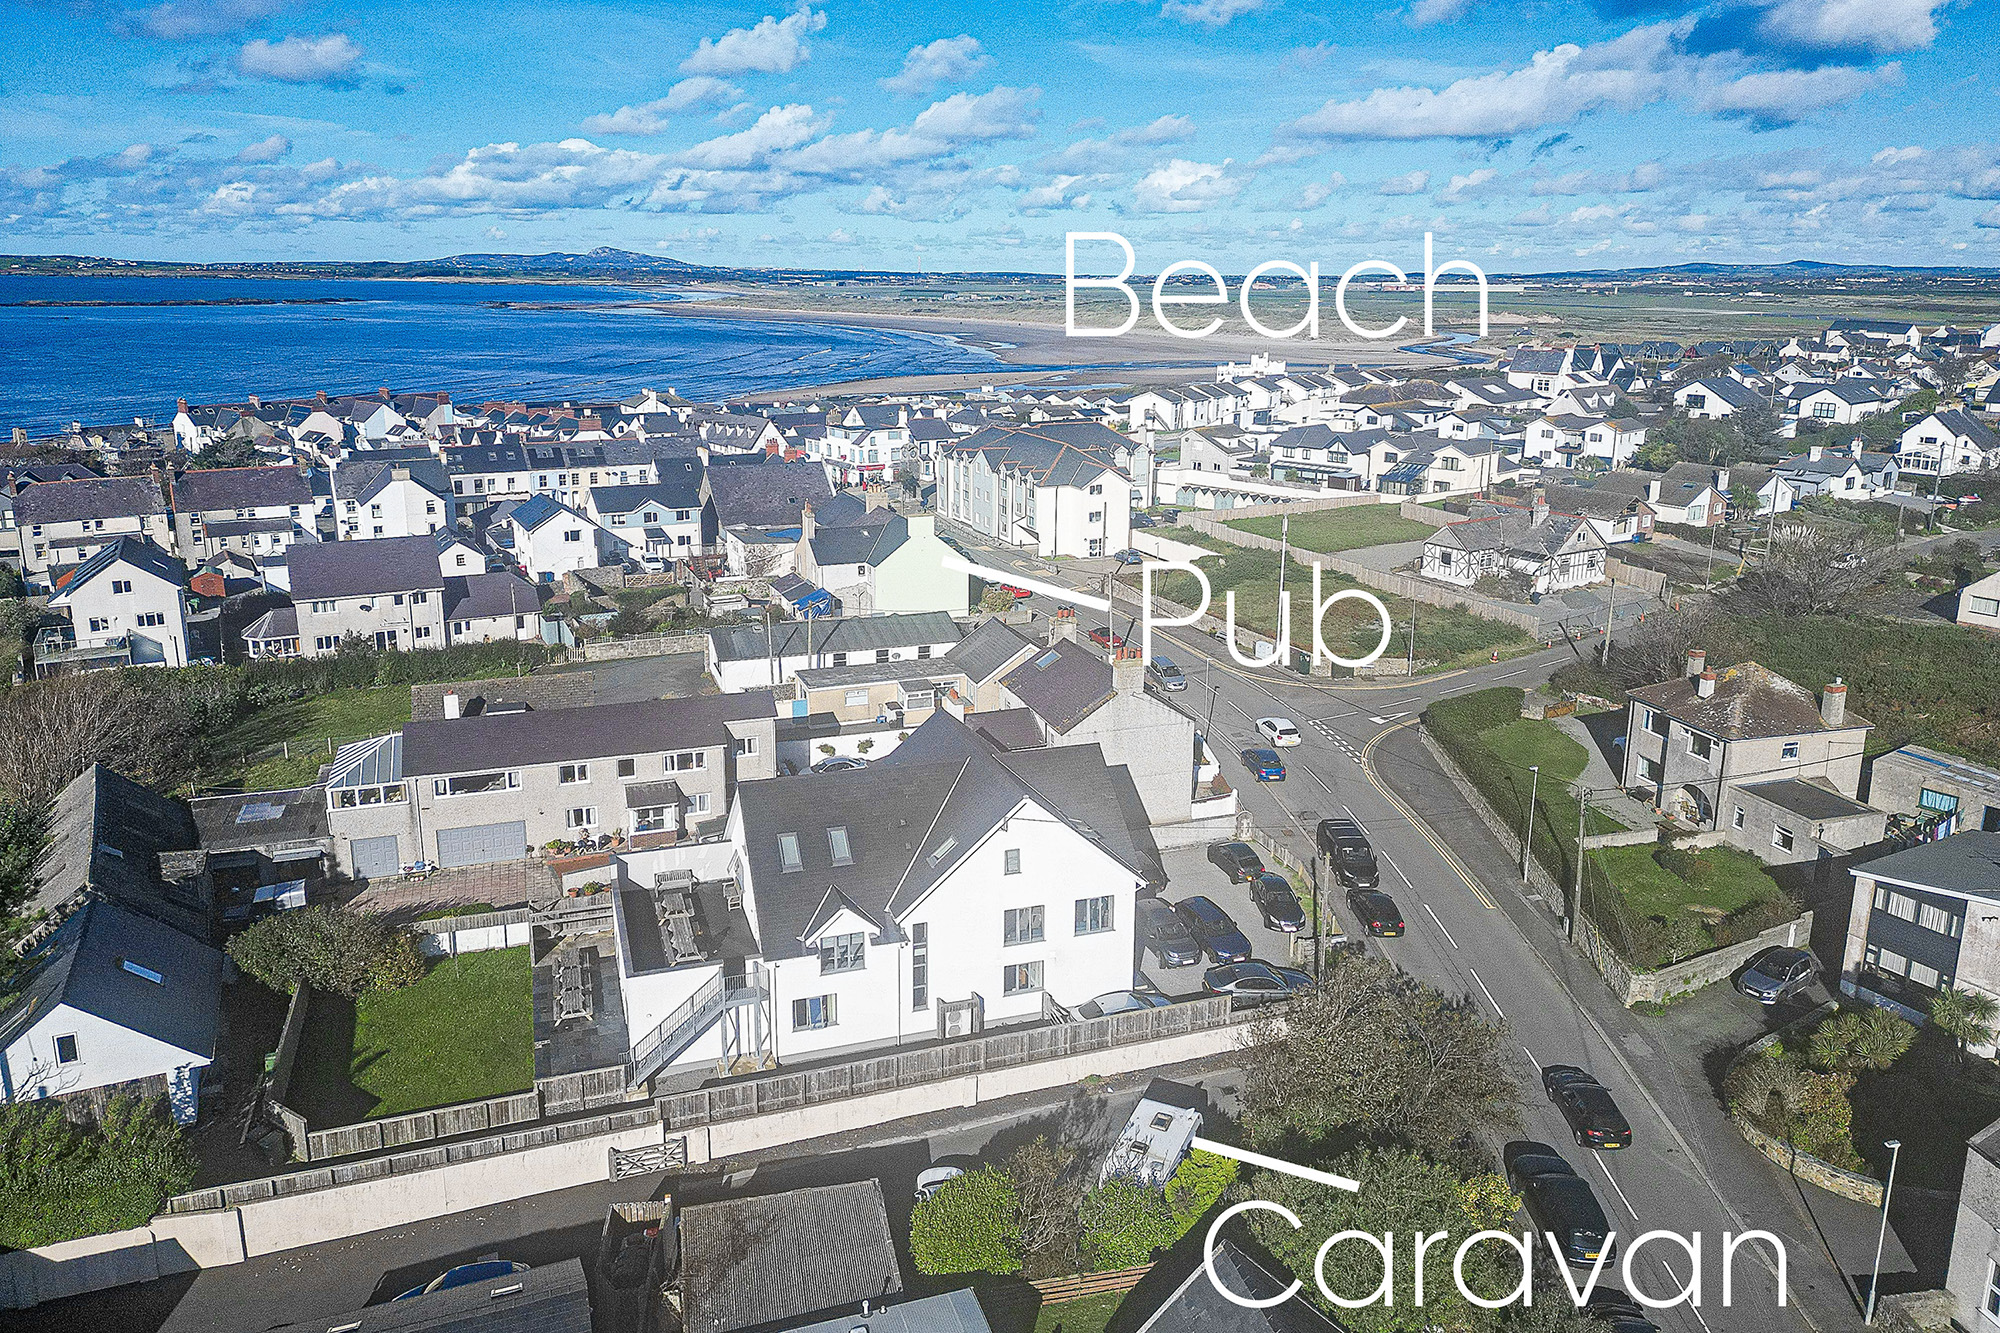 Caravan near beach and pub